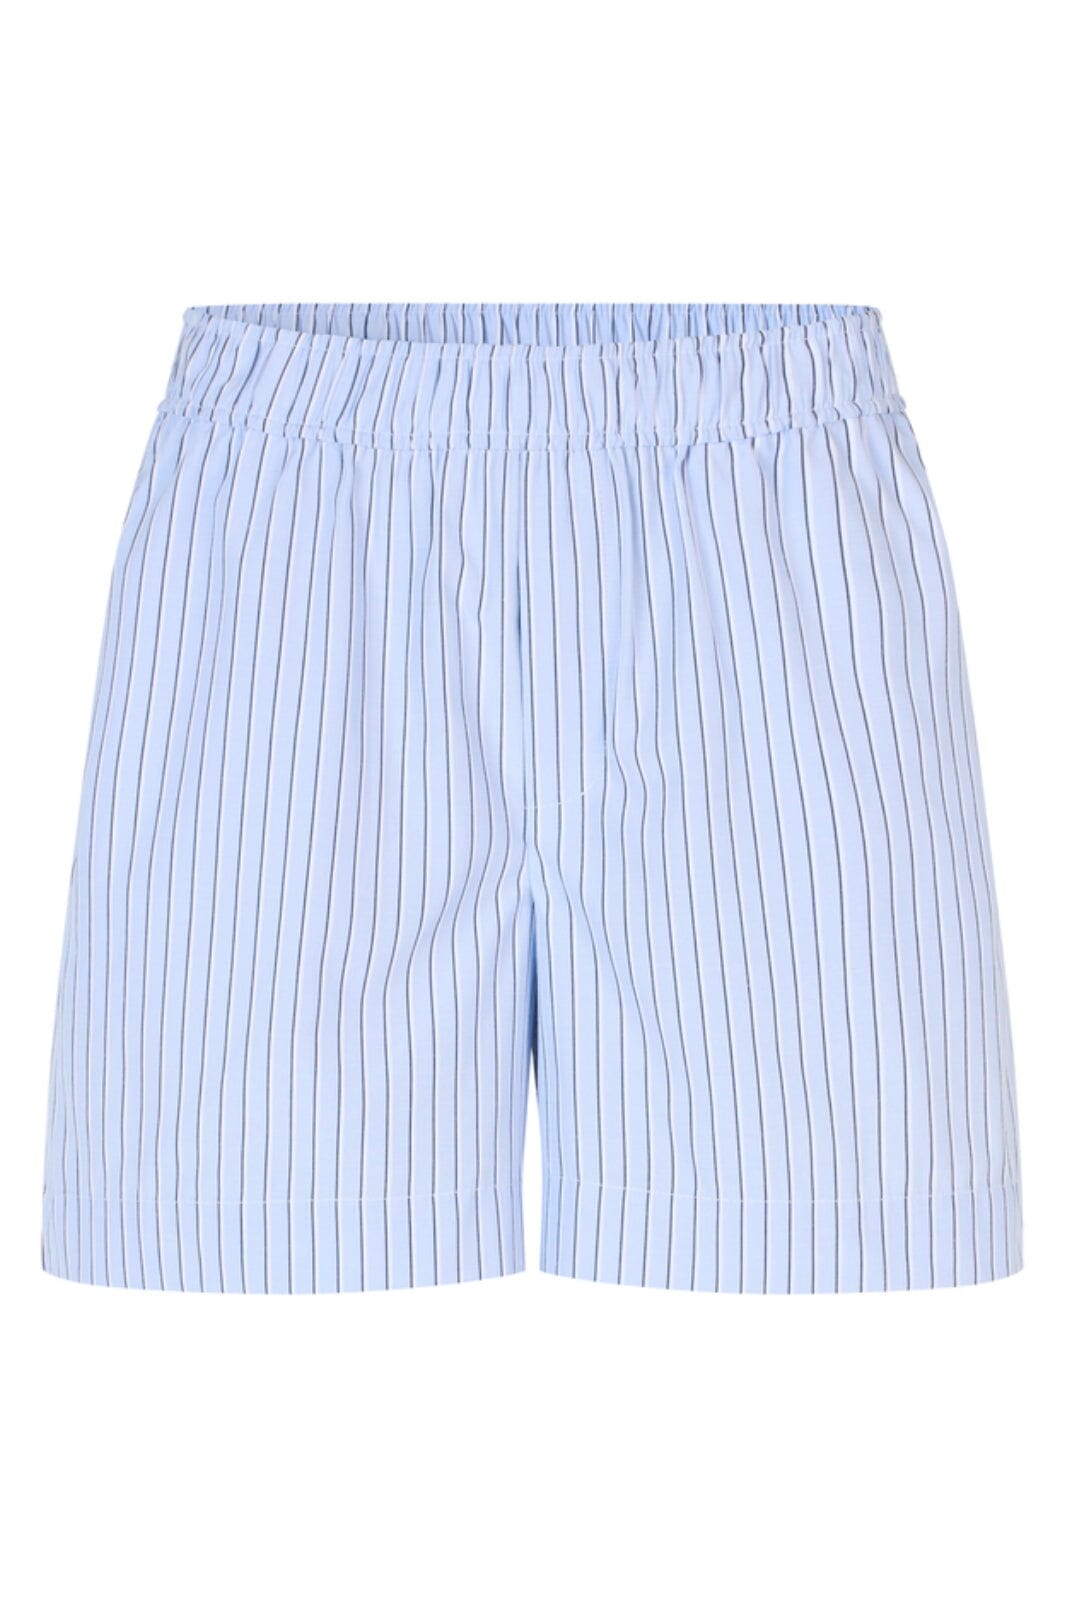 MbyM - Merinna-M - O89 Blue Navy Stripe Shorts 